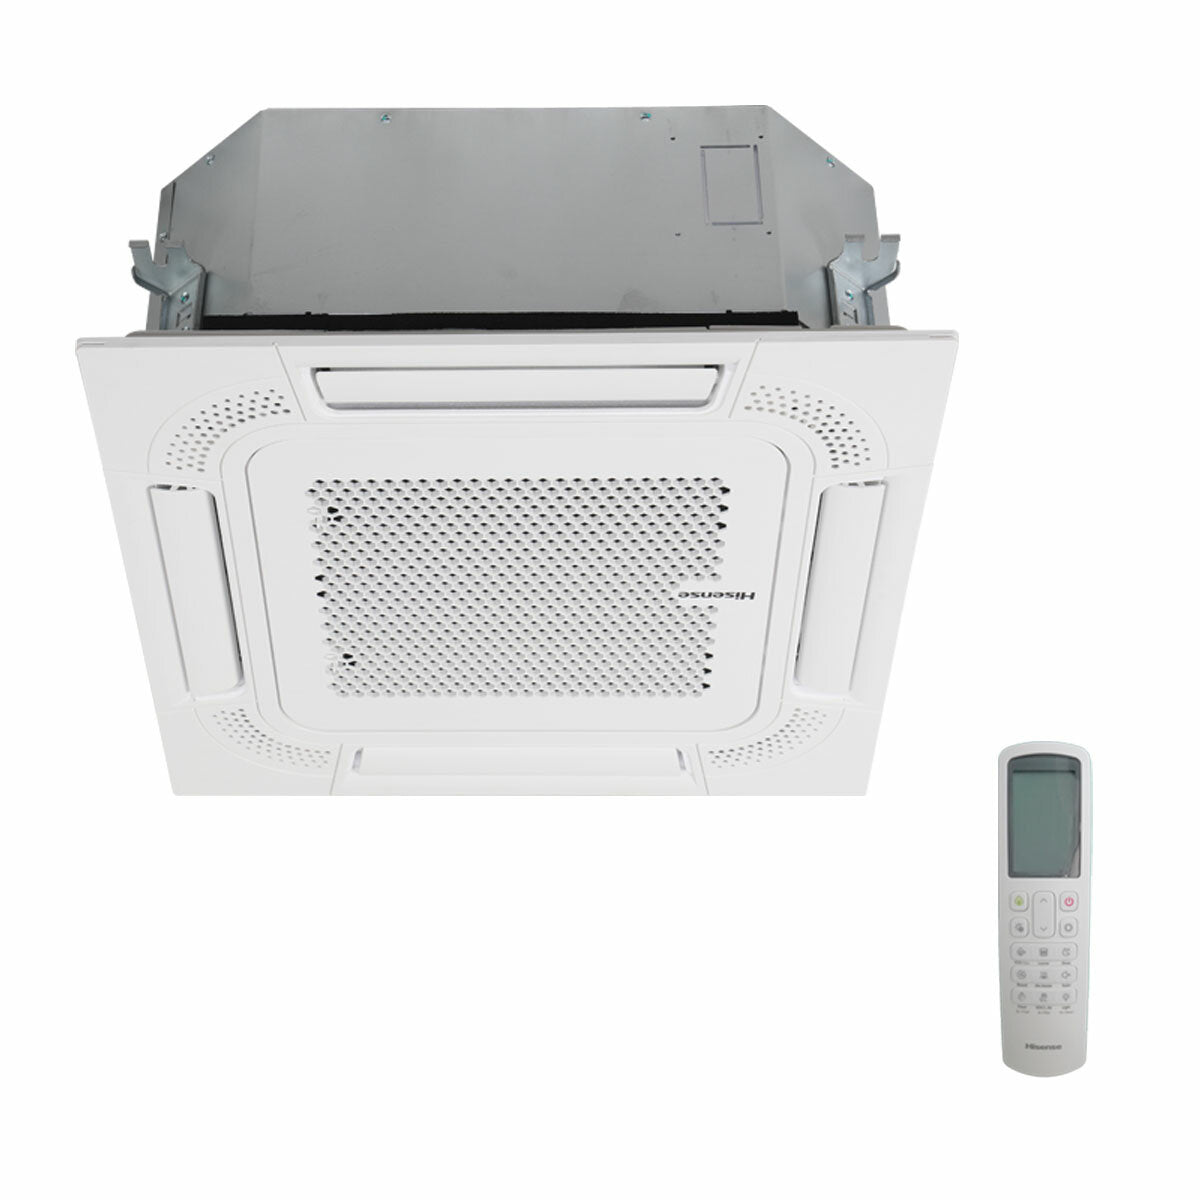 Hisense-Klimaanlage ACT Dual-Split-Kassette 9000+9000 BTU Inverter A++ Außeneinheit 3,5 kW